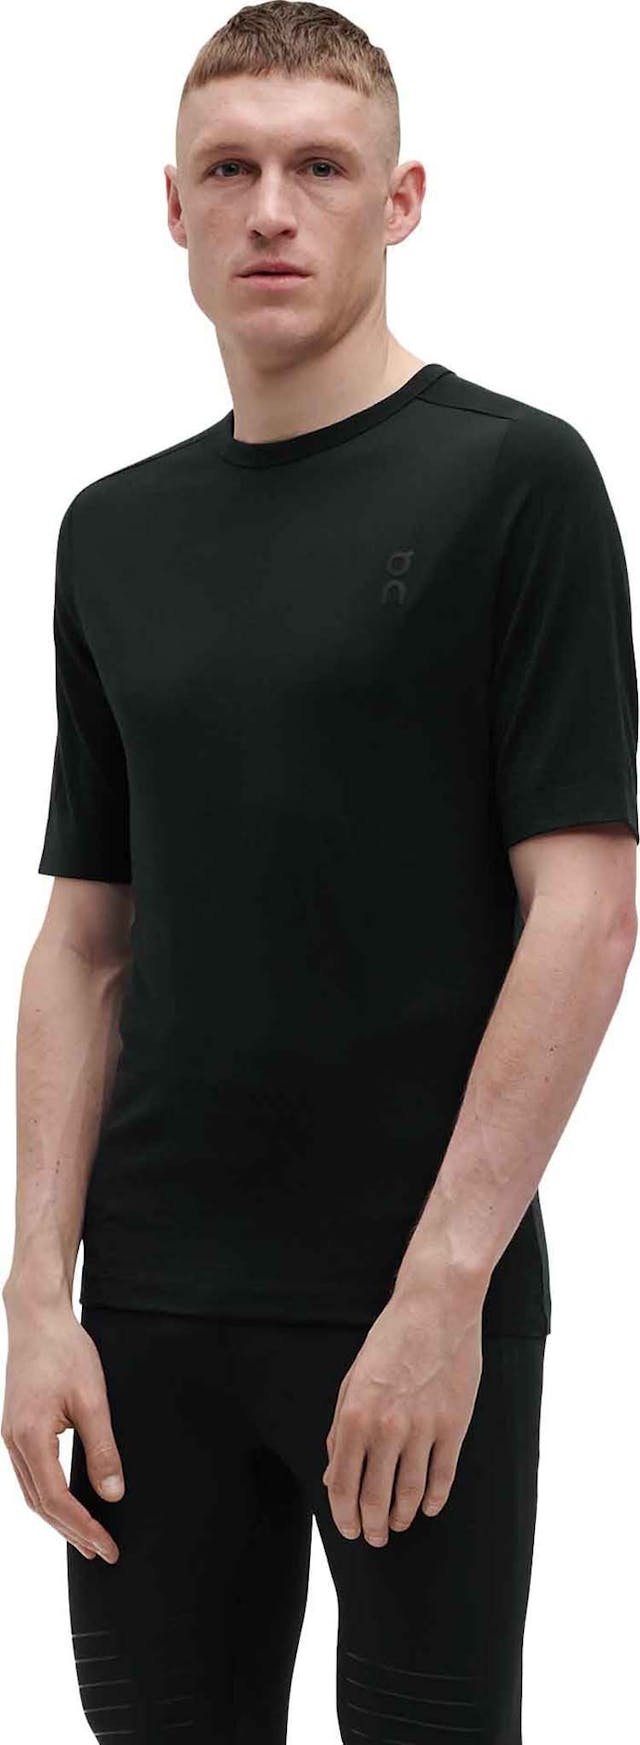 Product image for Merino T-shirt - Men's